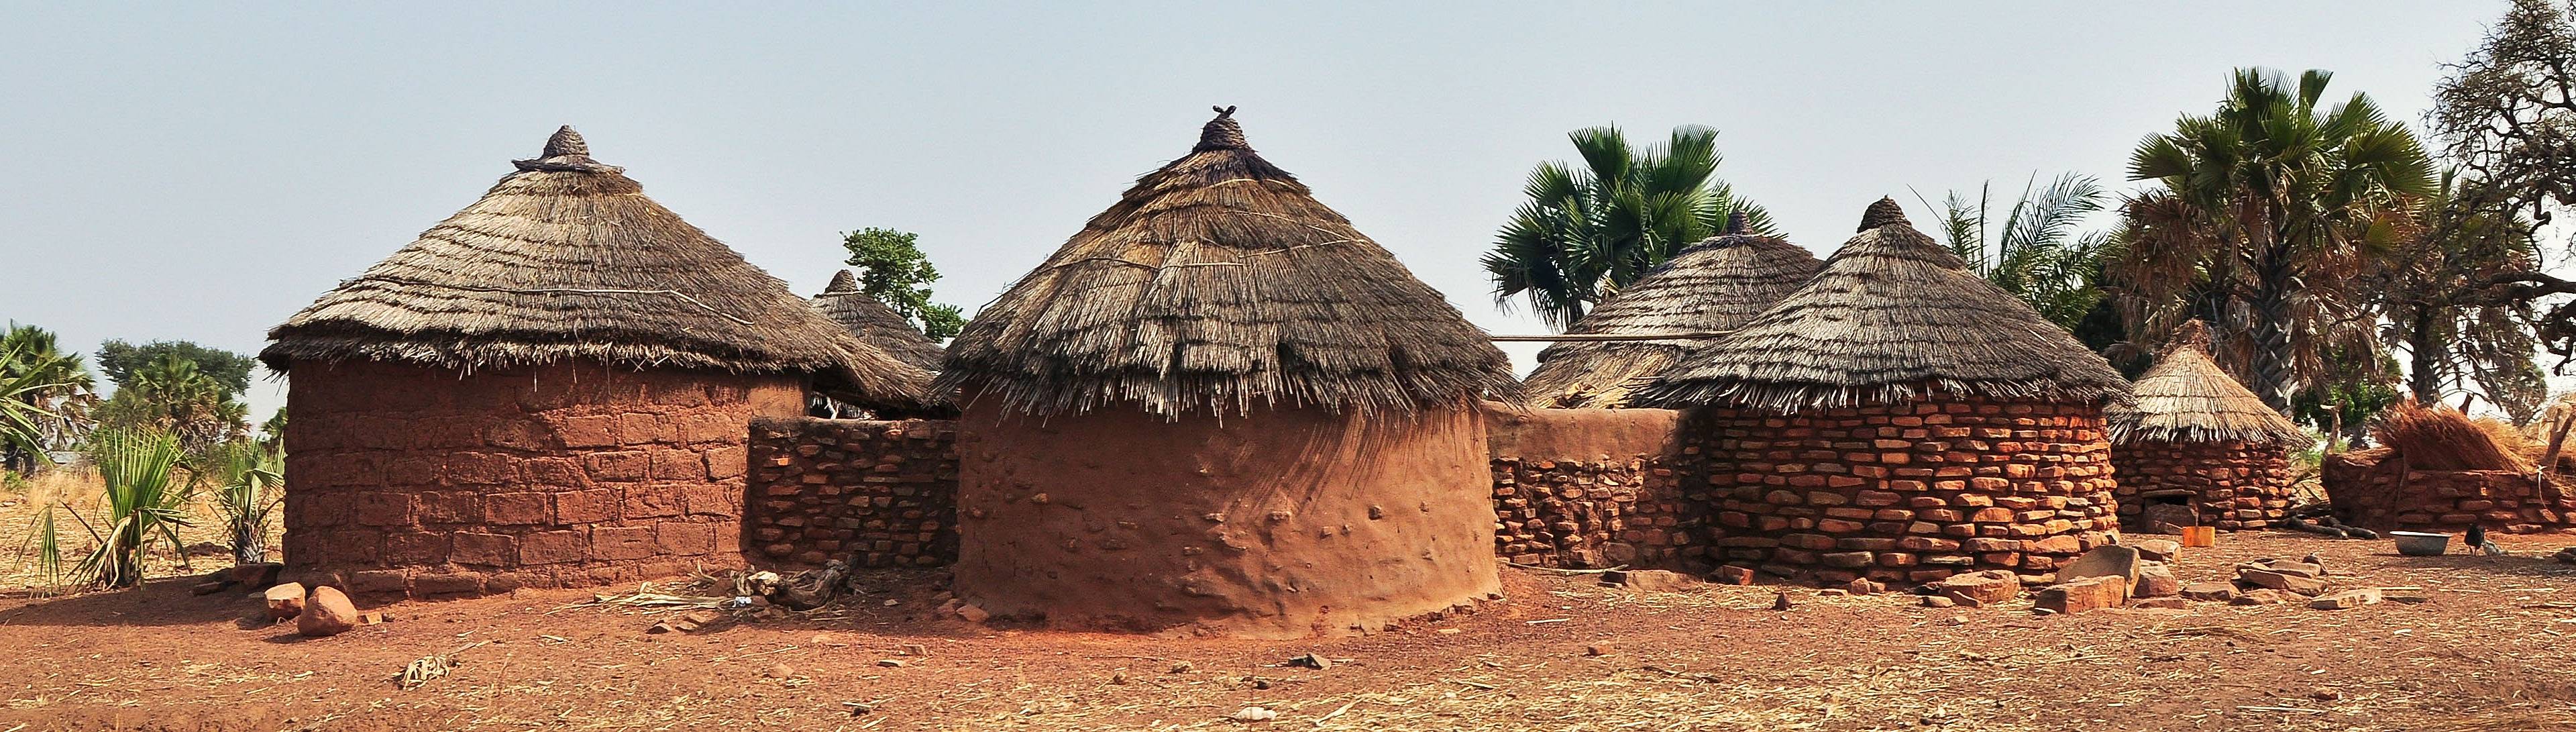 Habitations des grottes de Nok, Togo